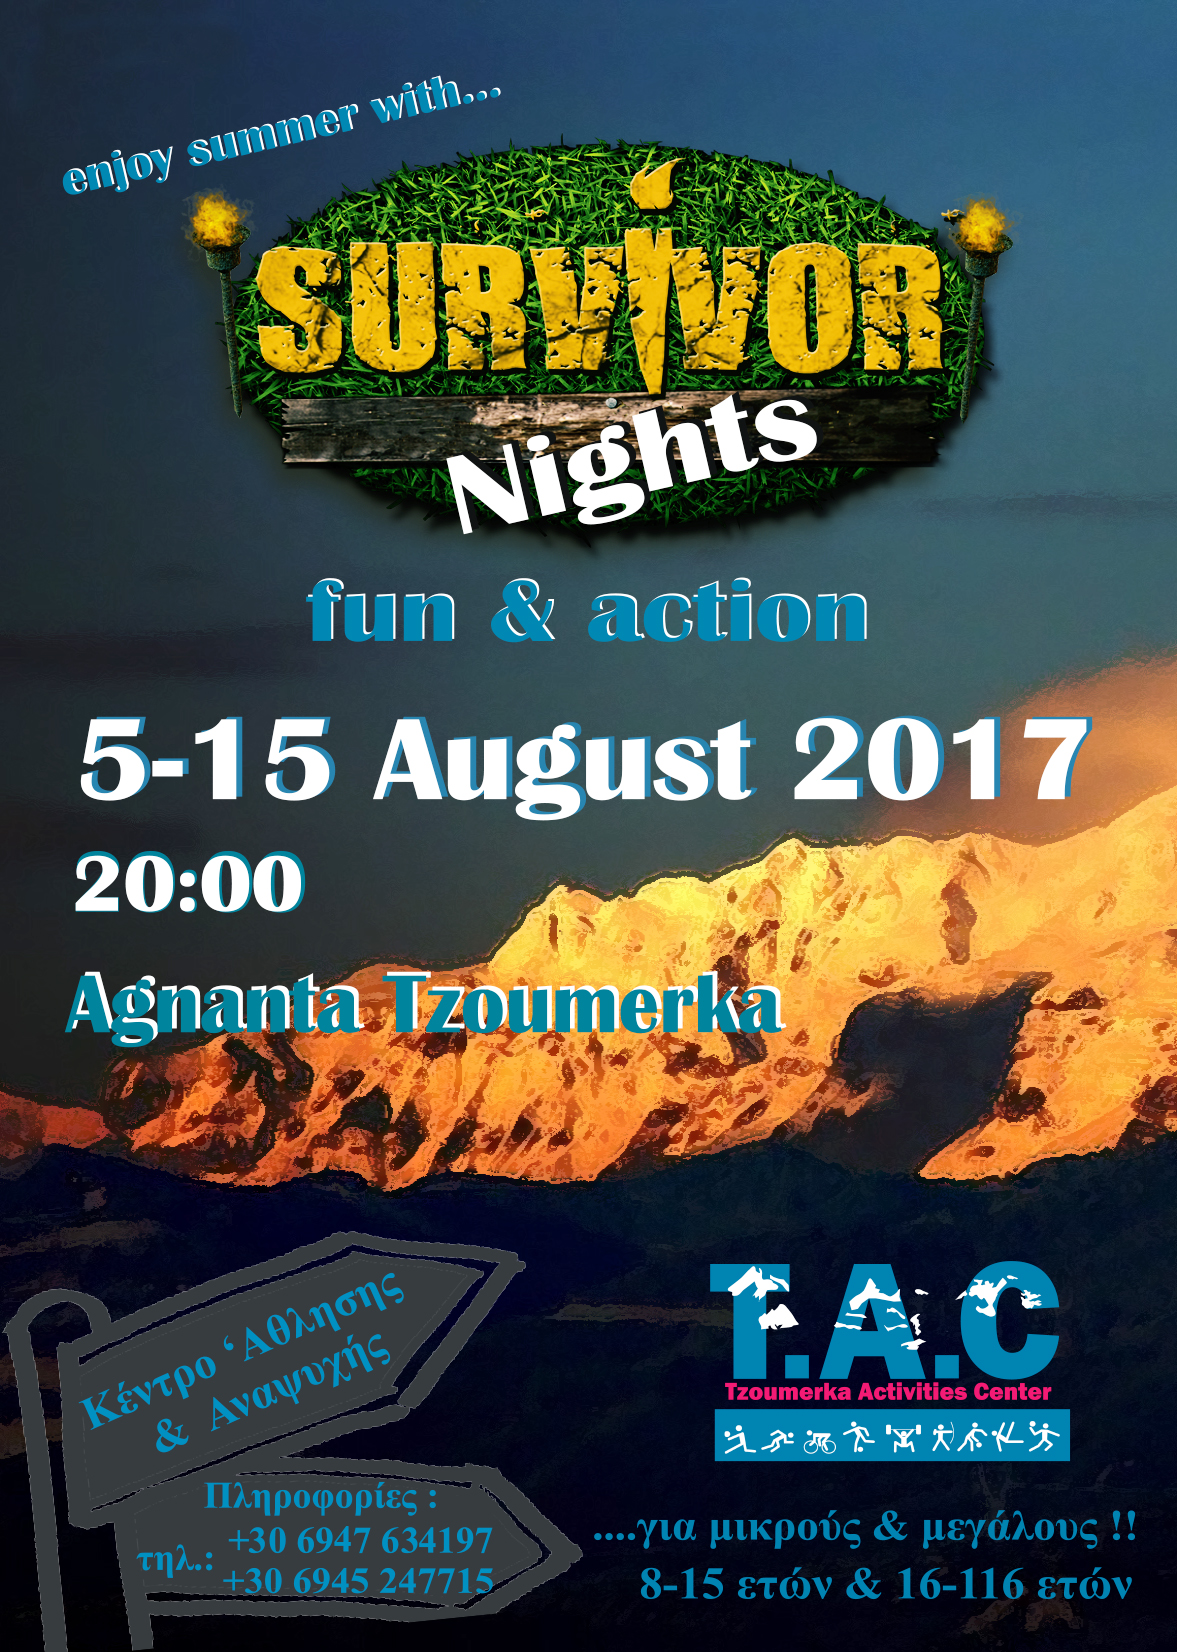 Tzoumerka survivor nights